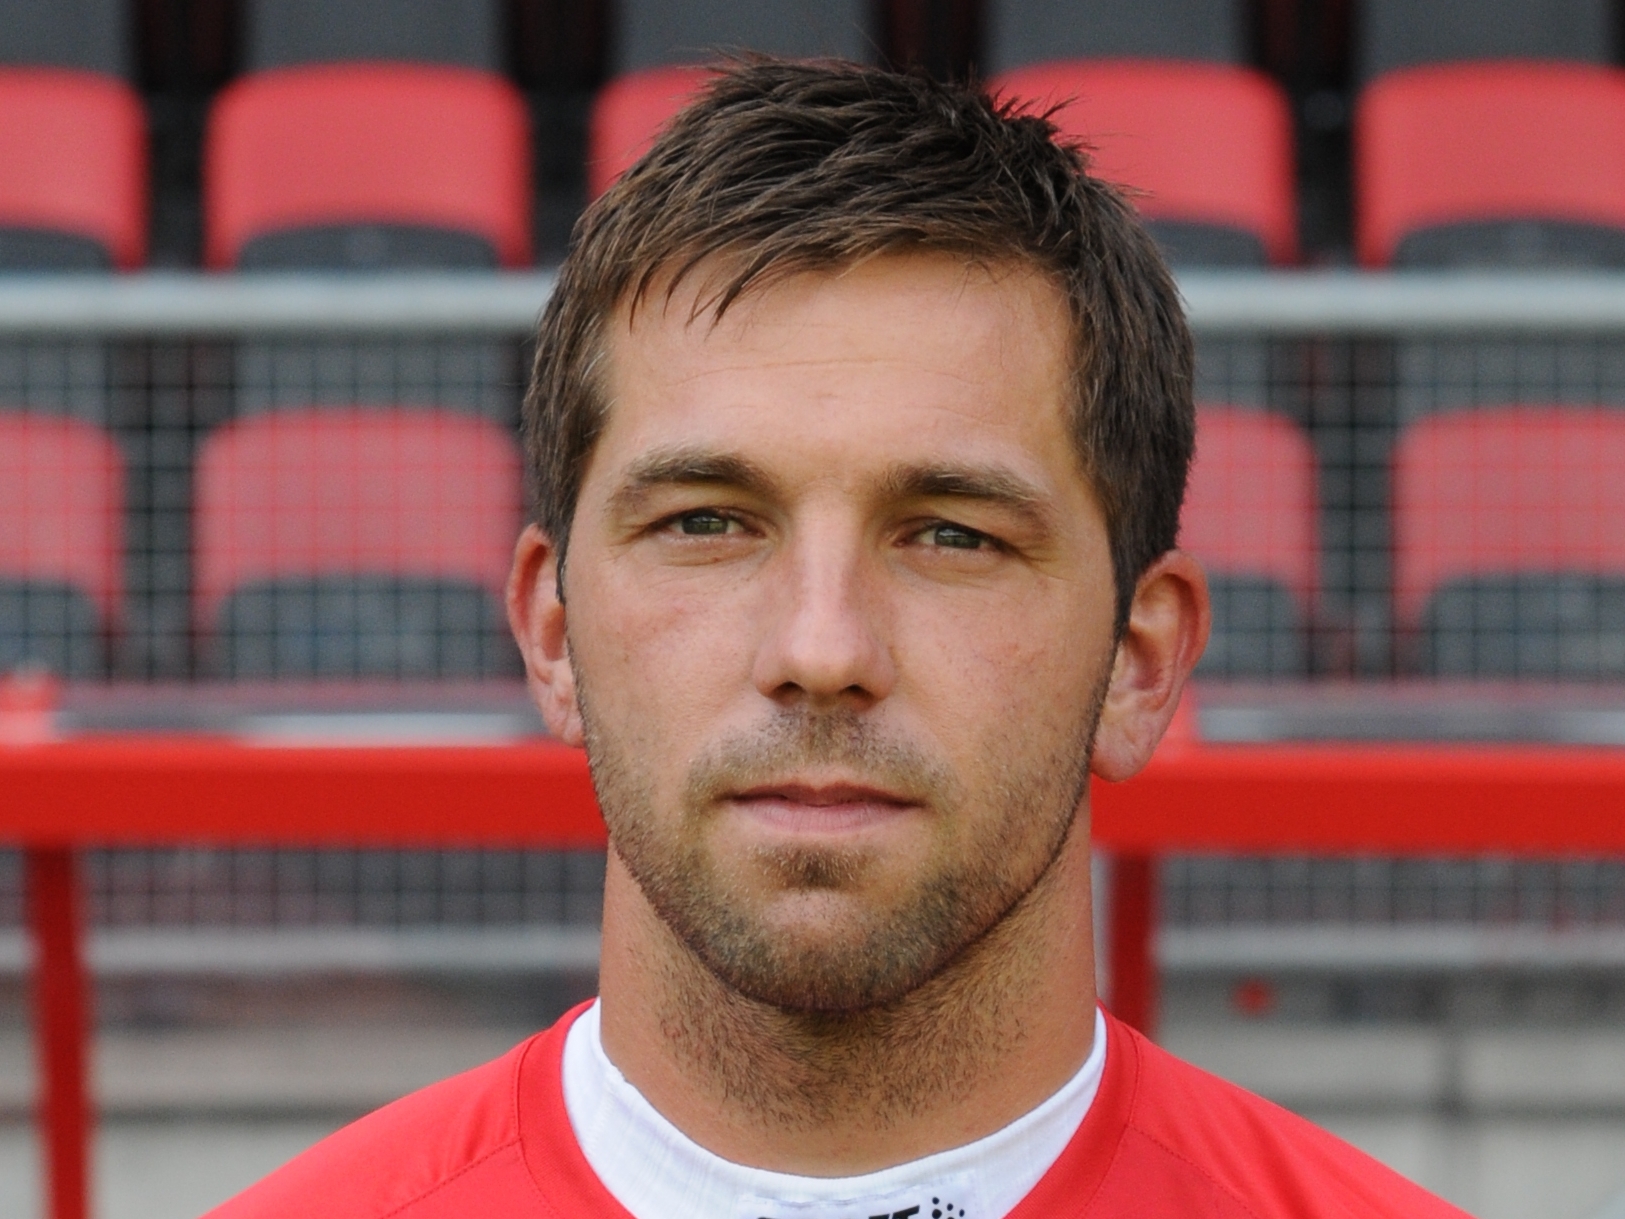 <b>Theo Janssen</b> Rapid ageing in footballers - 43764